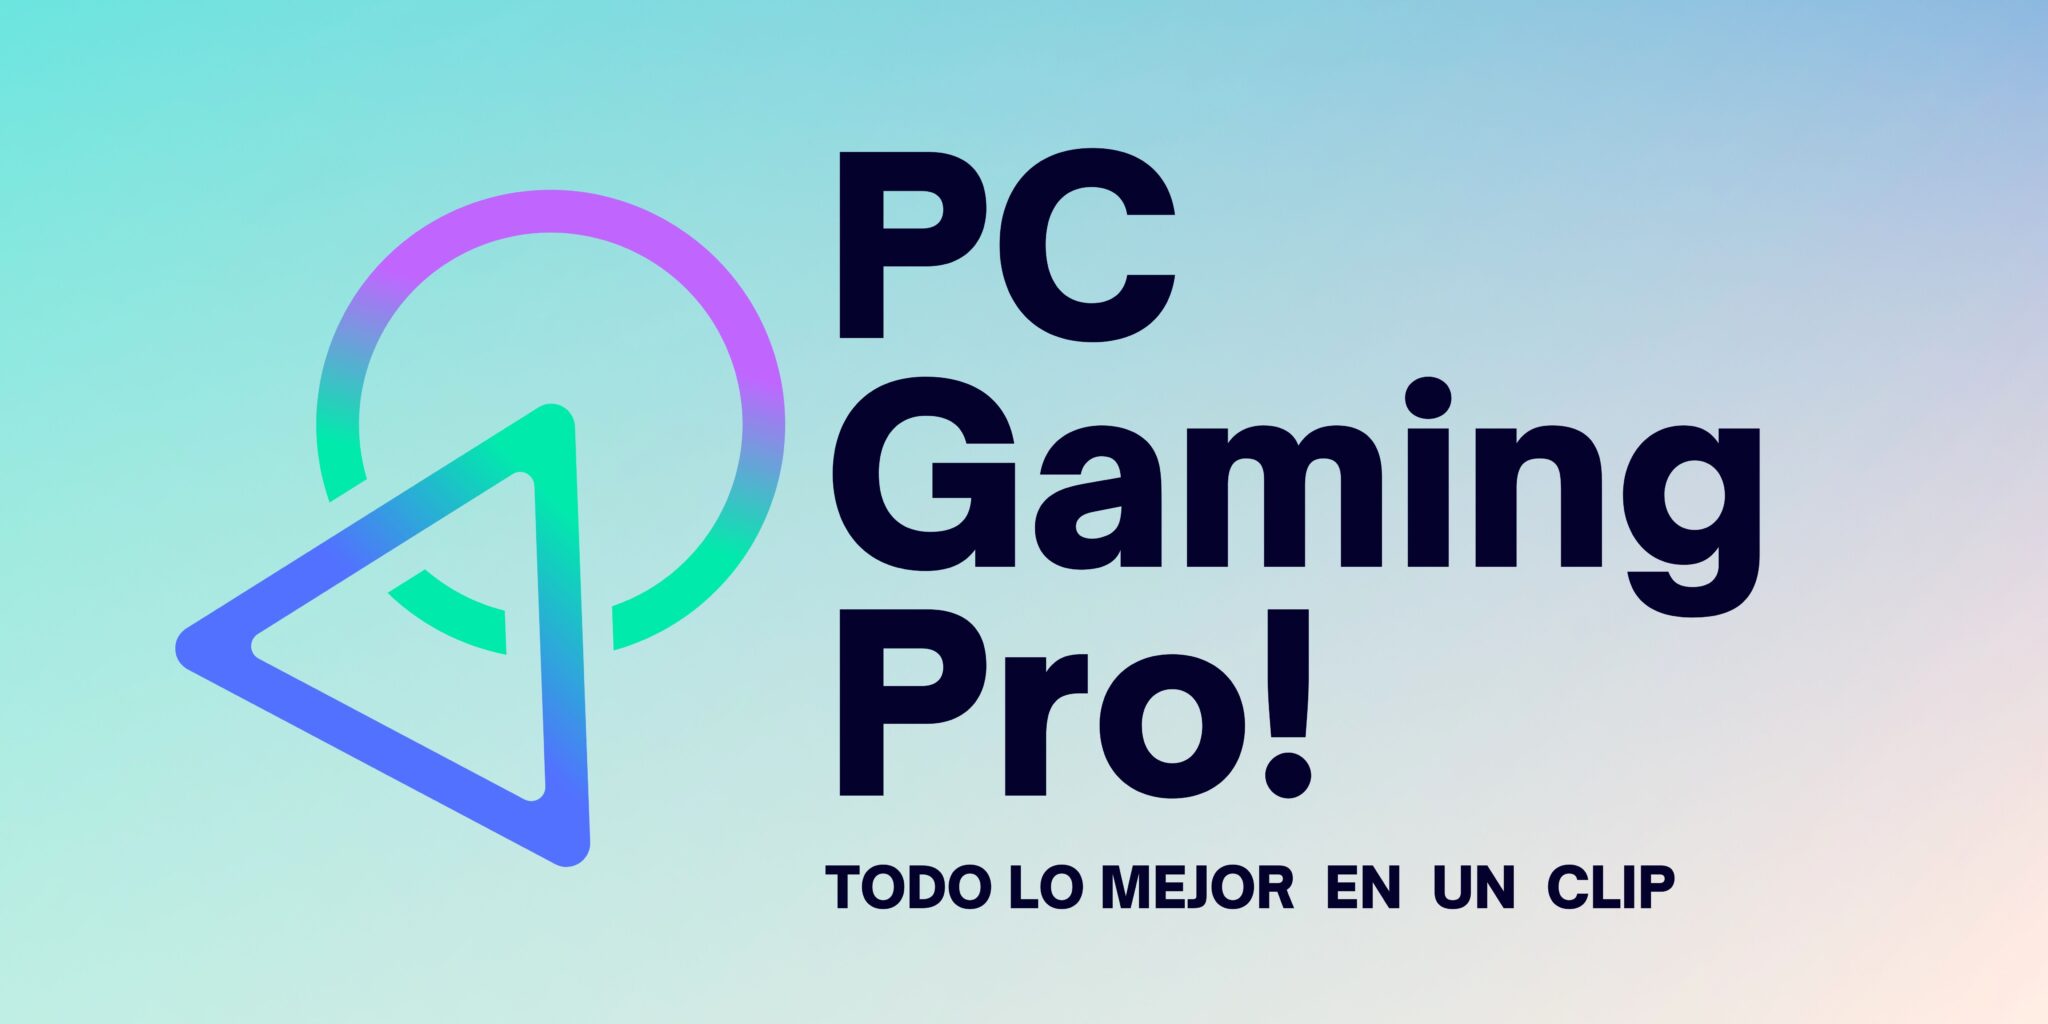 PC Gaming: Accesorios y equipos